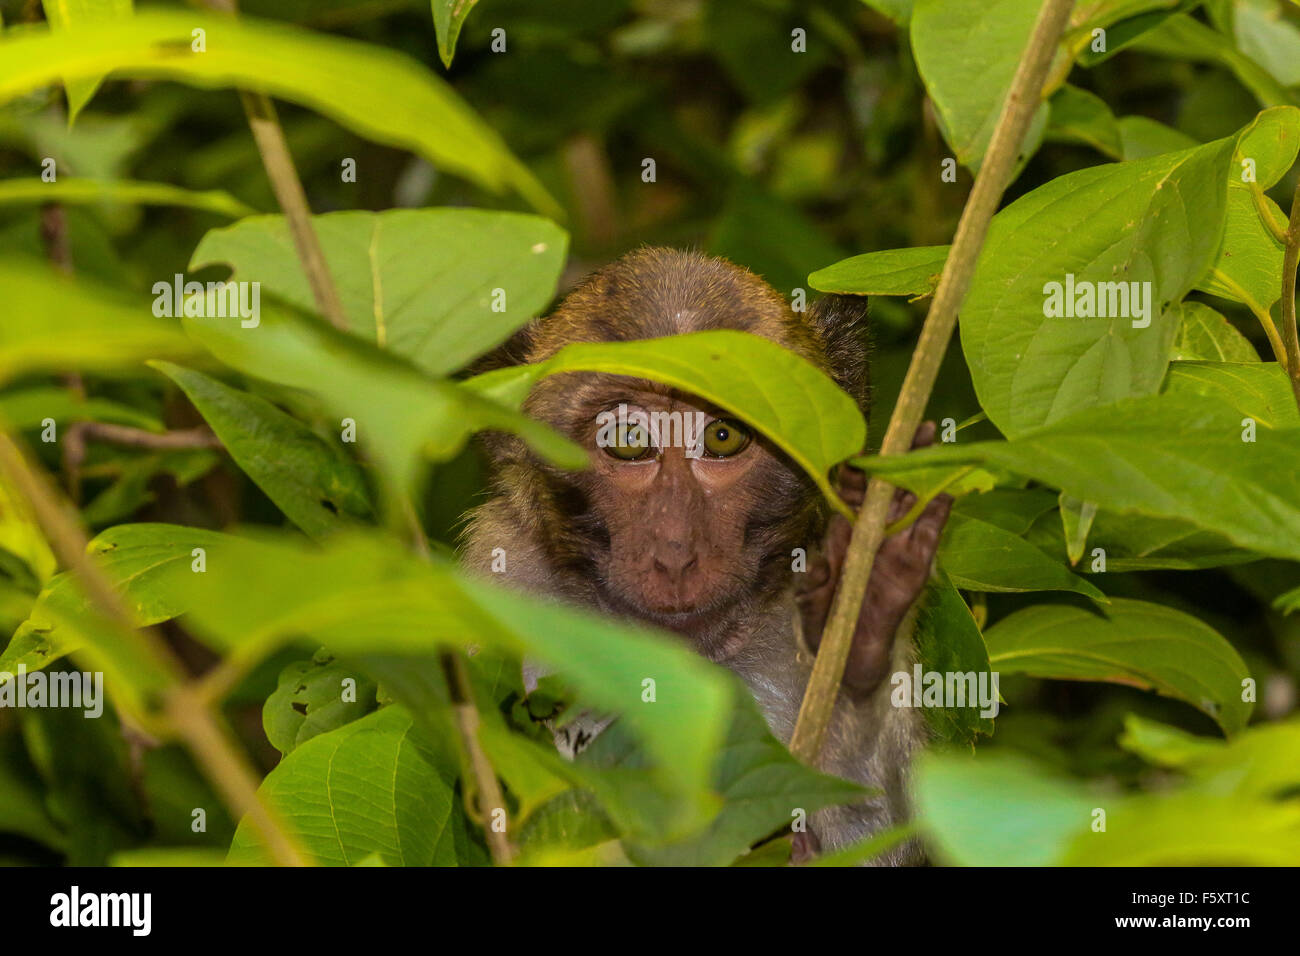 Potete vedere me ? Timido picchi di scimmia fuori da dietro alcune foglie verdi. Foto Stock